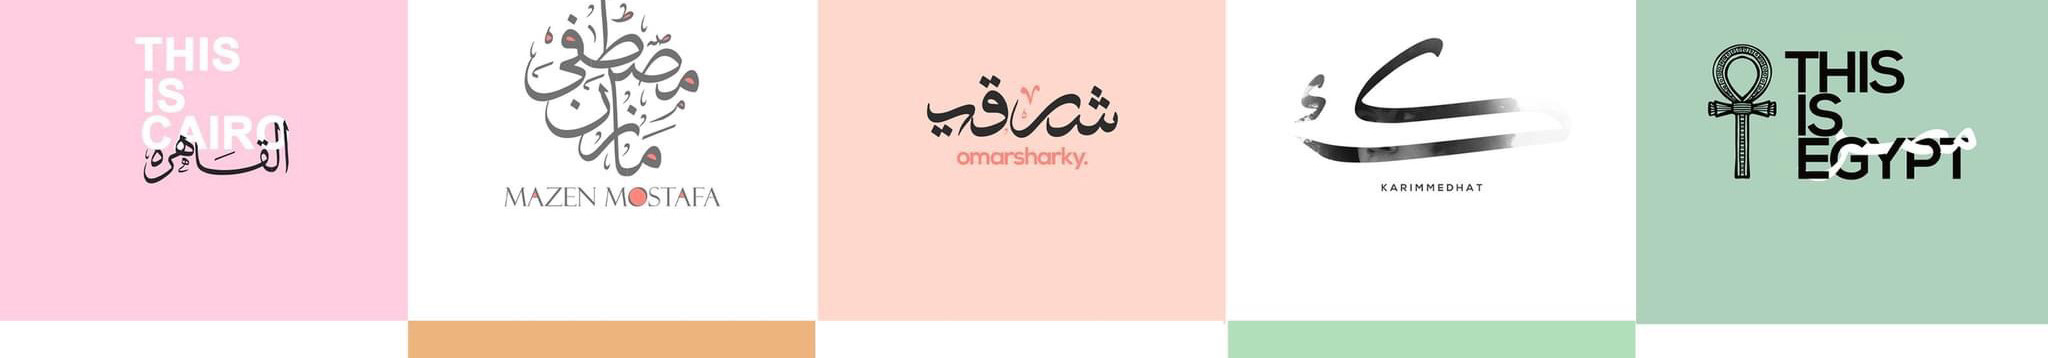 Usama Nabil ✪'s profile banner